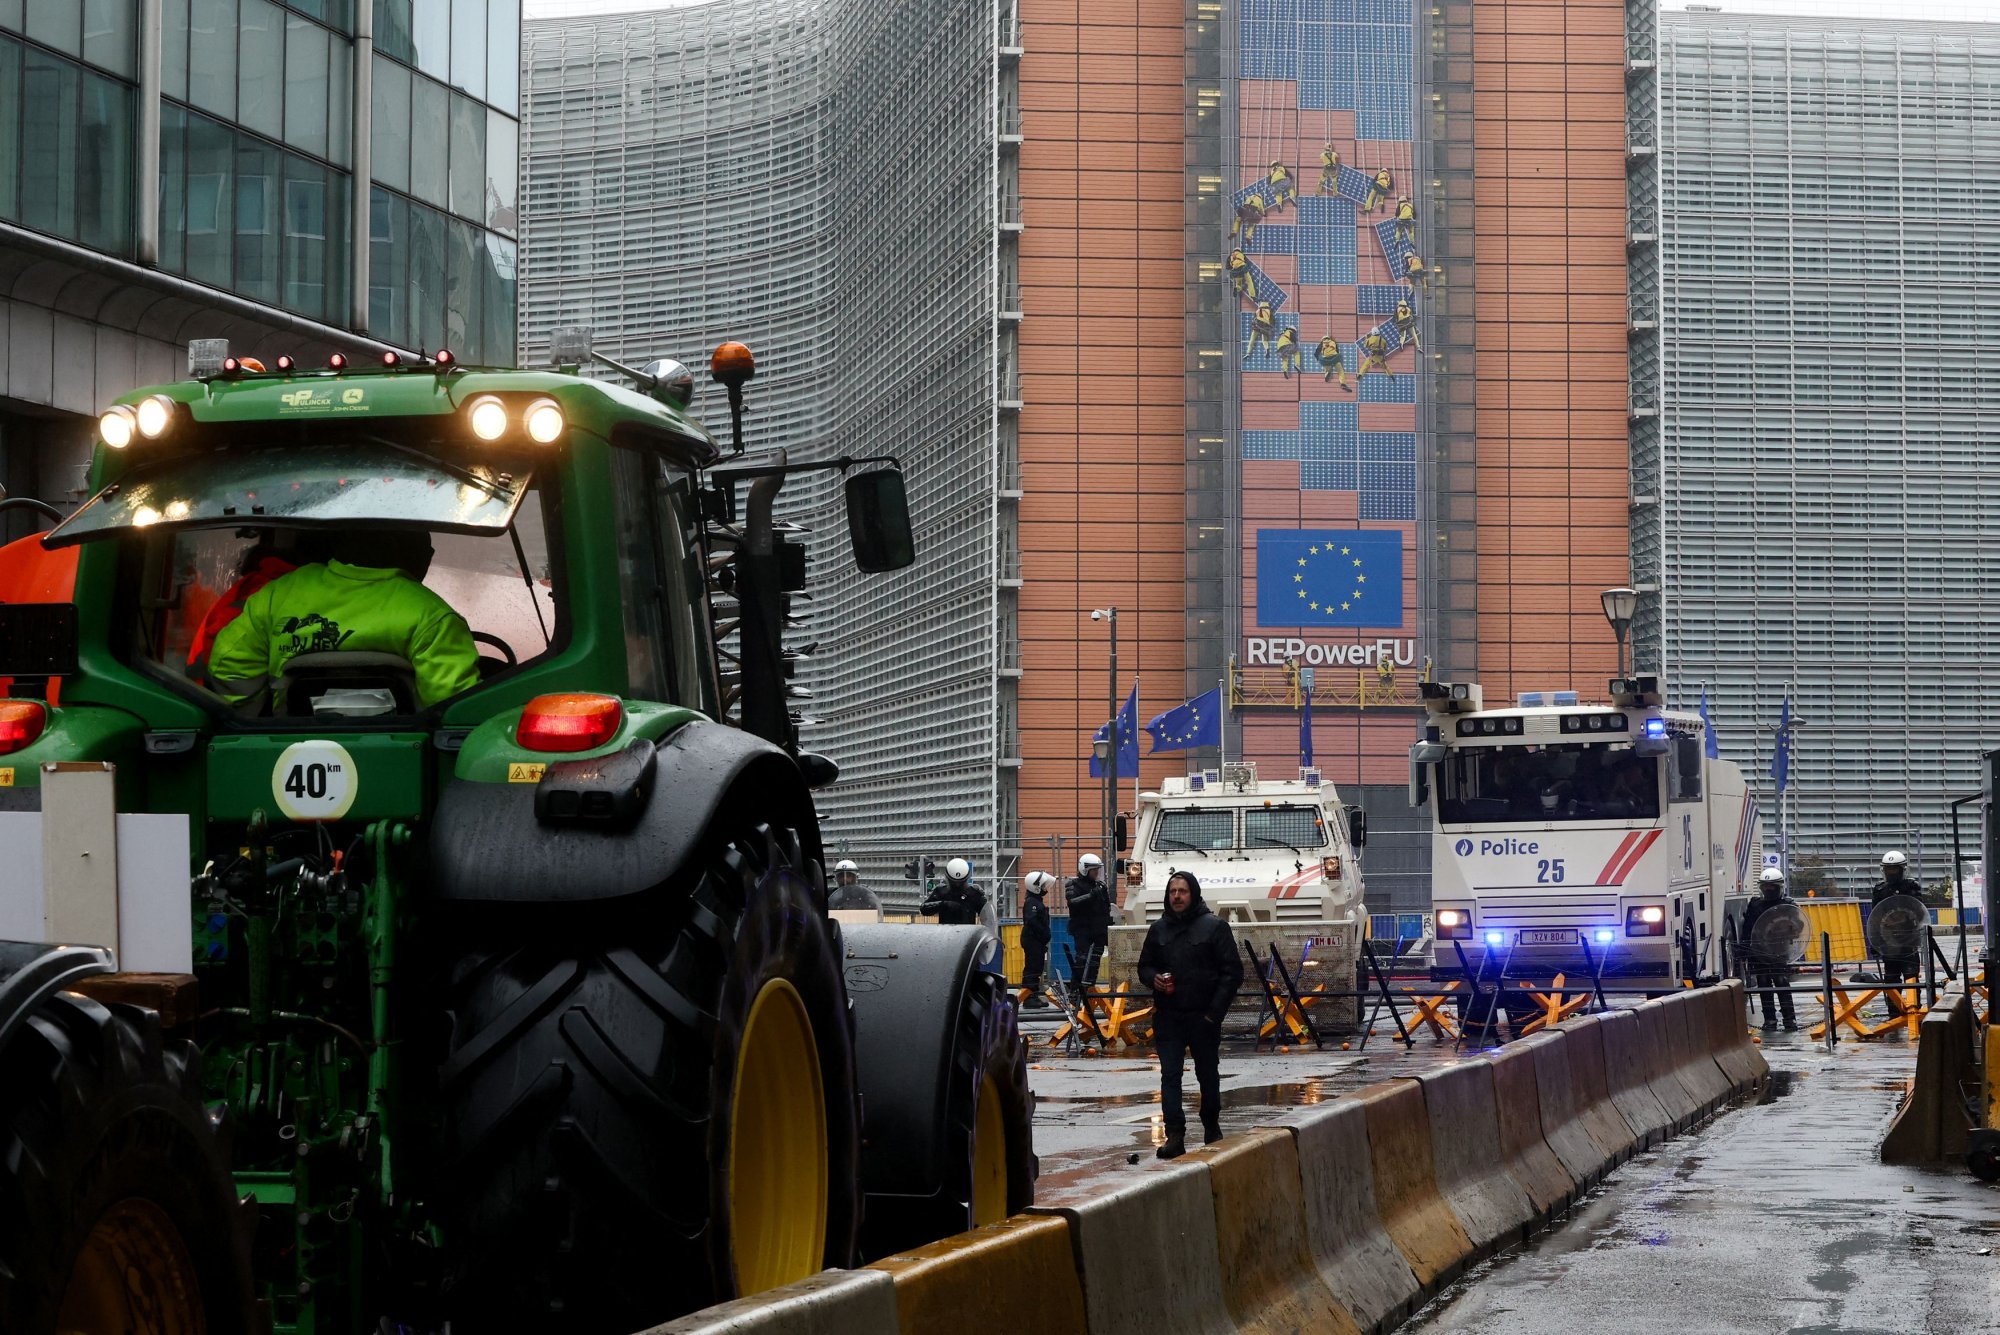 Η Κομισιόν καλεί τους αγρότες να λάβουν μέρος σε διαδικτυακή έρευνα για τη γραφειοκρατία των Βρυξελλών